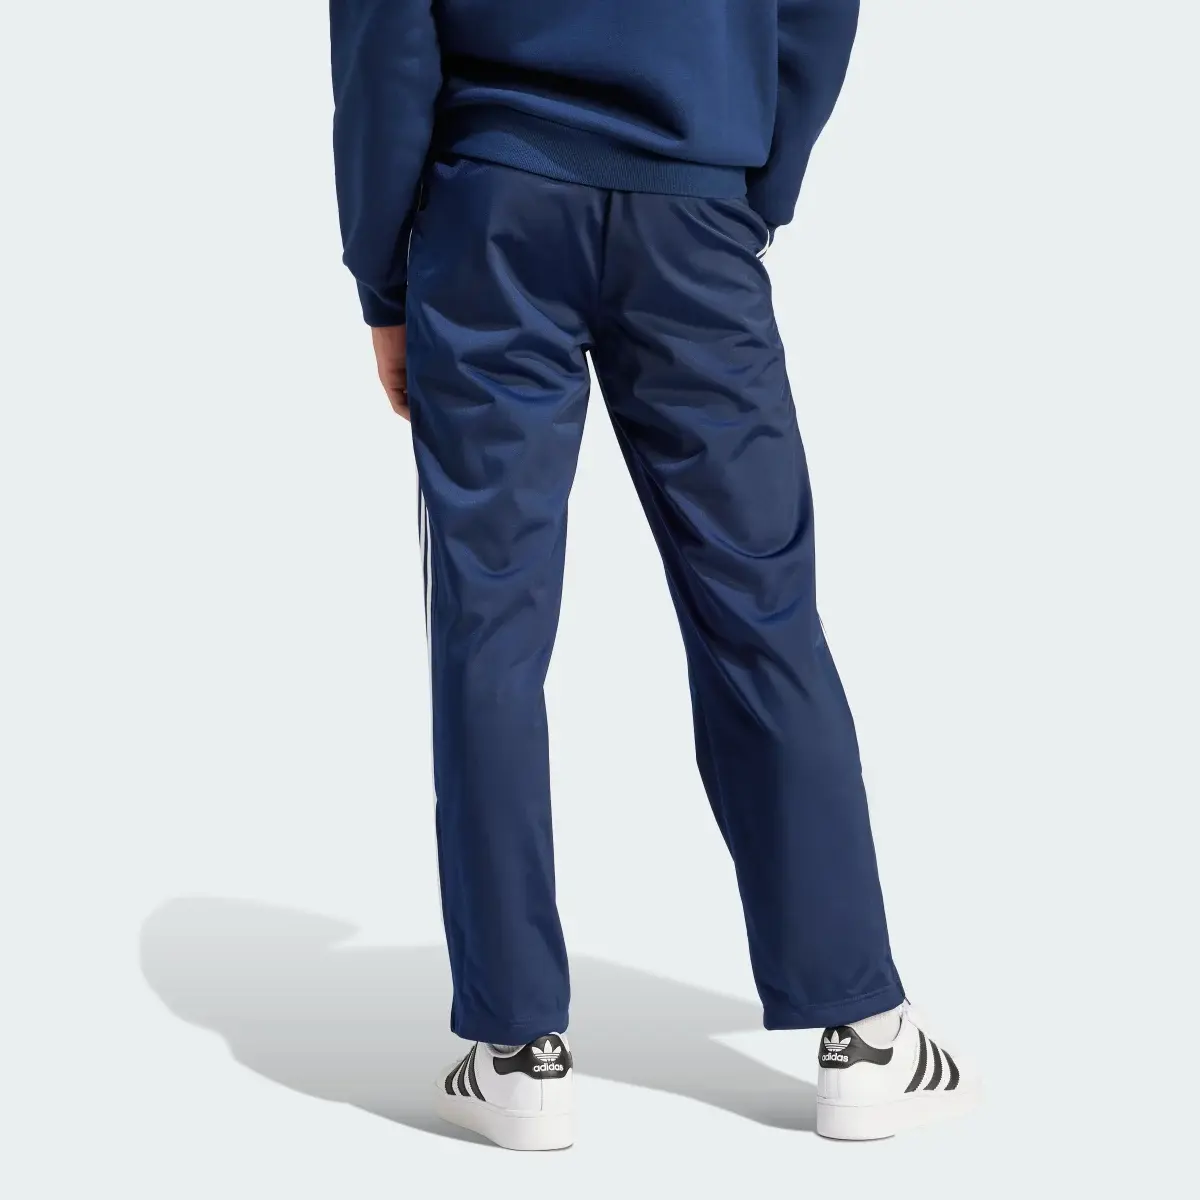 Adidas Spodnie dresowe Adicolor Classics Firebird. 2